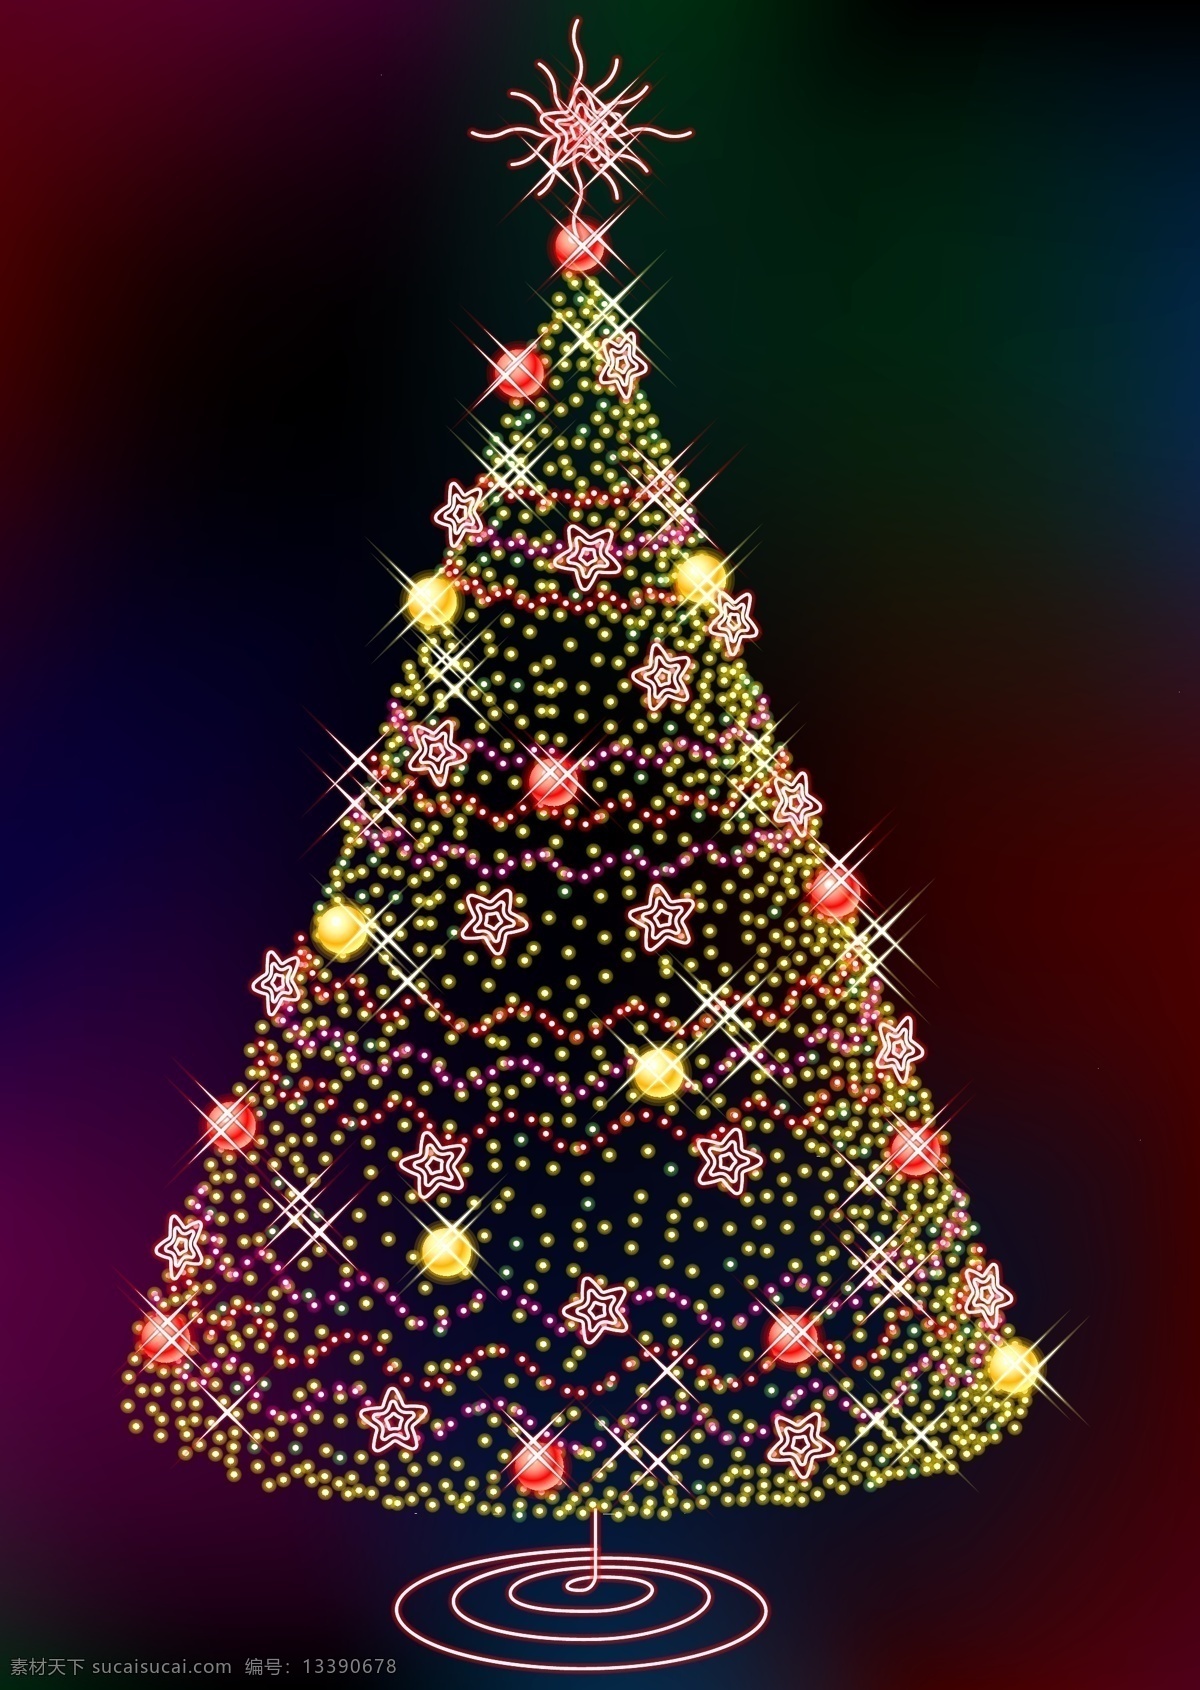 christmas merry 缤纷圣诞 精品 发光 圣诞树 圣诞 背景 元素 色彩缤纷 精美圣诞元素 精美 圣诞节 装饰 红色 经典 节日素材